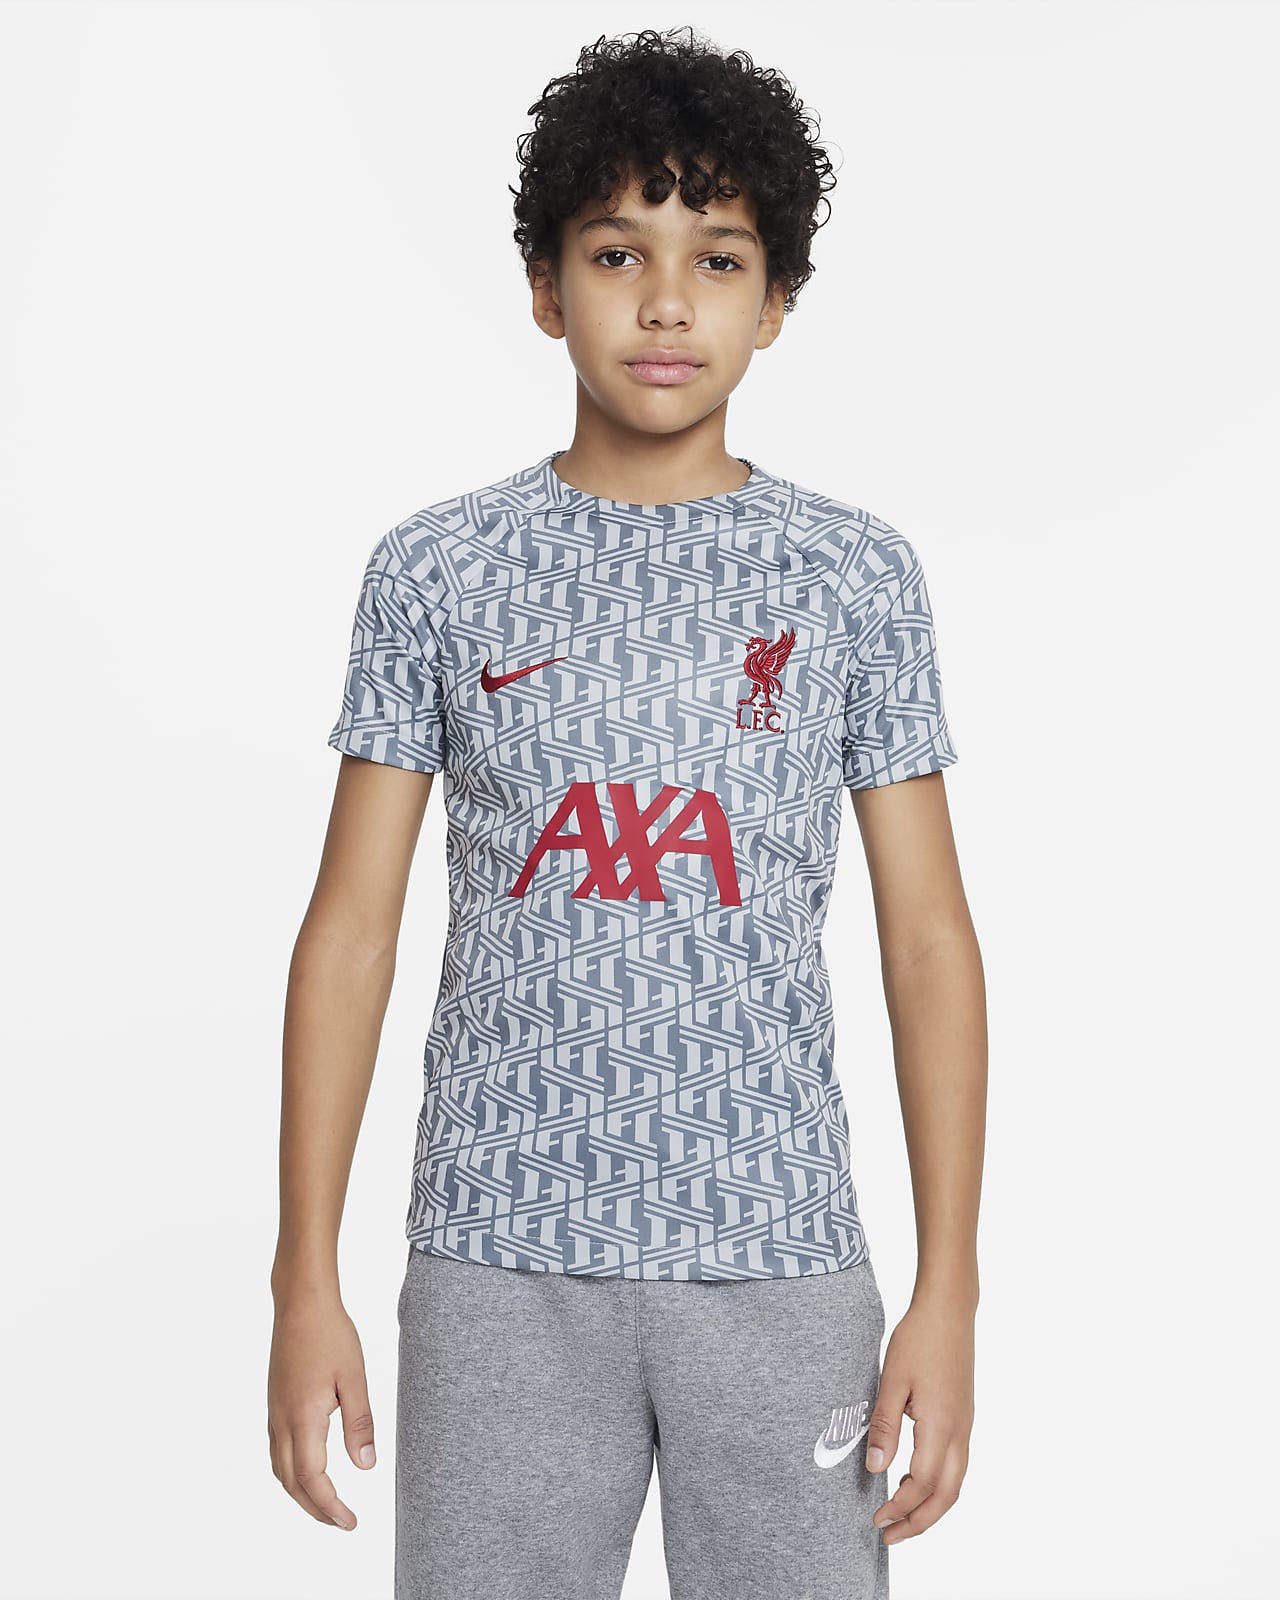 Liverpool F.C. Older Kids' Nike Dri-FIT Pre-Match Football Top